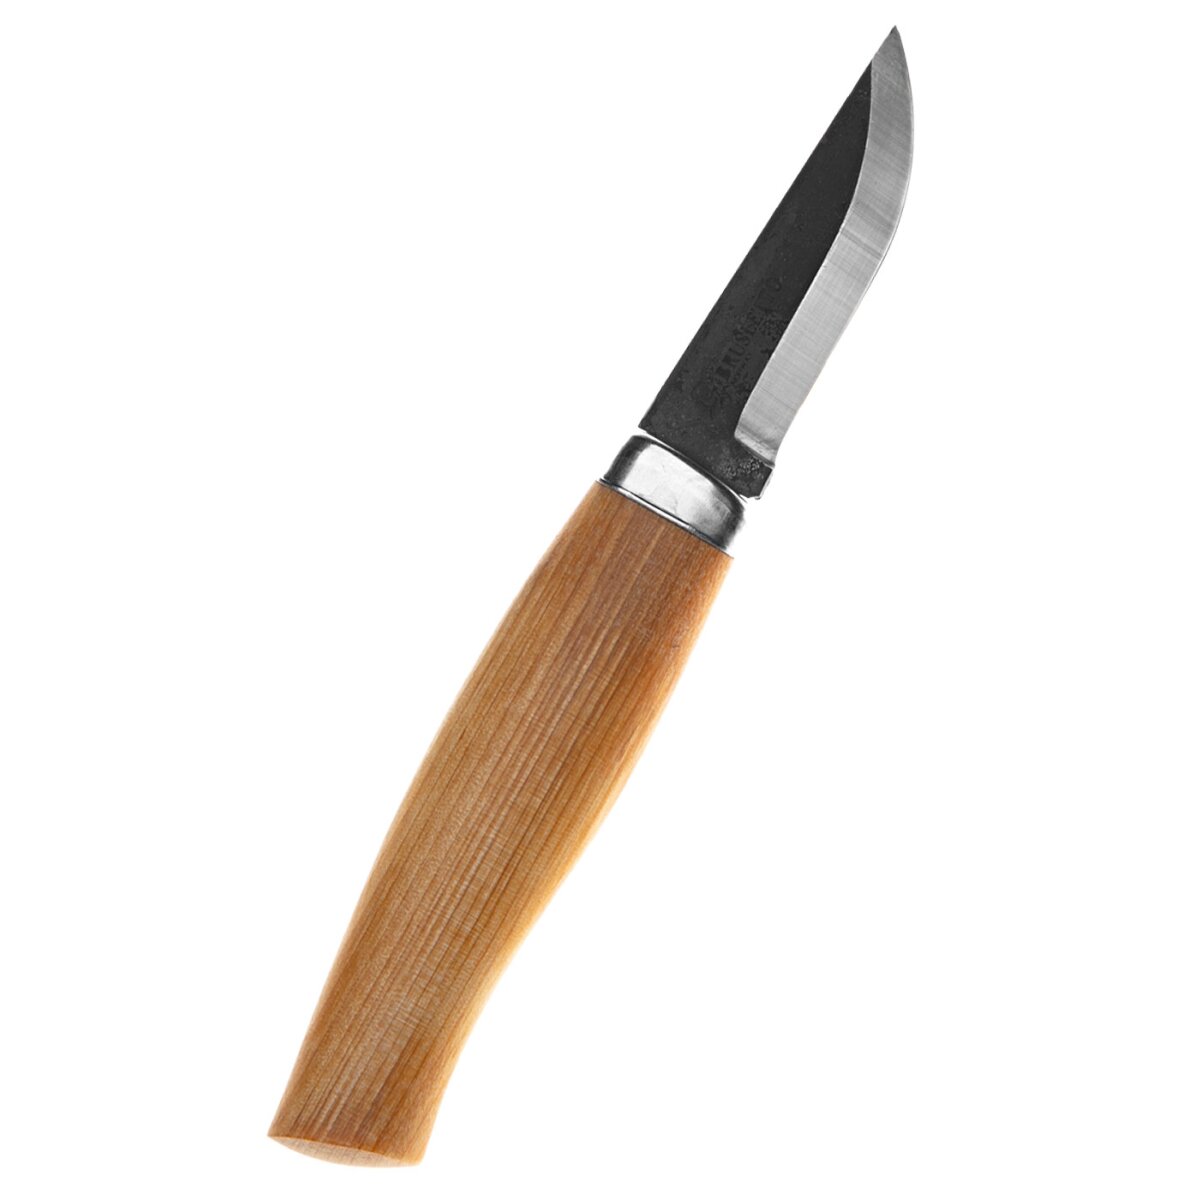 Outdoor knife Spikkekniv, Brusletto